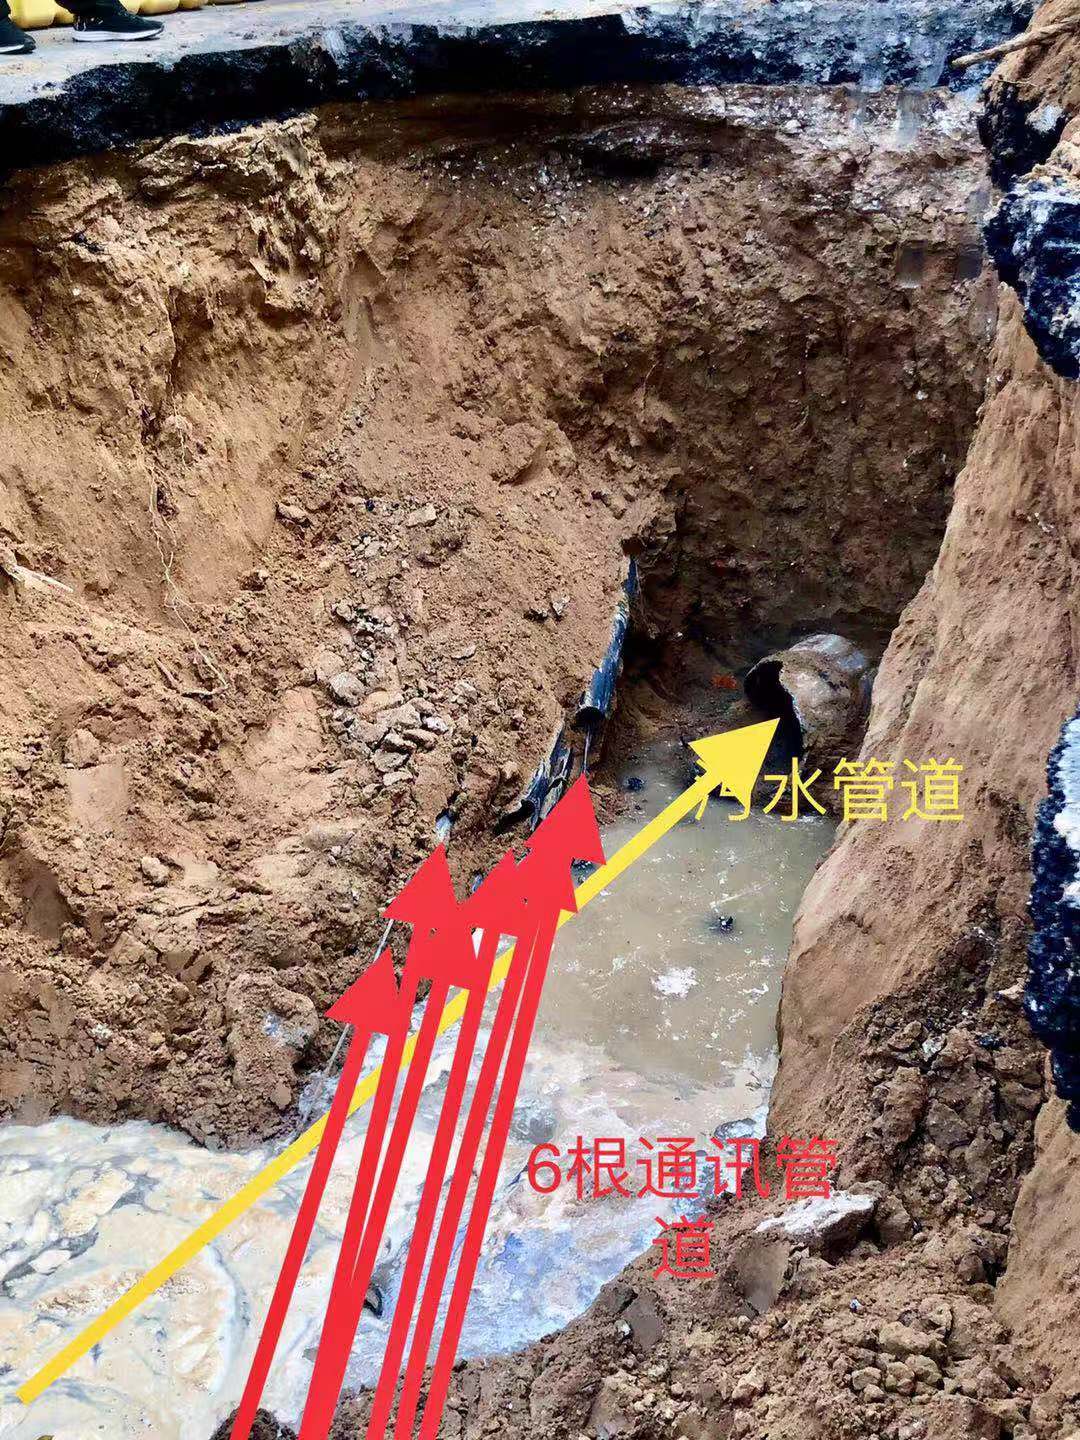 广东英德沙口镇岩溶地面塌陷发育特征及形成机理分析